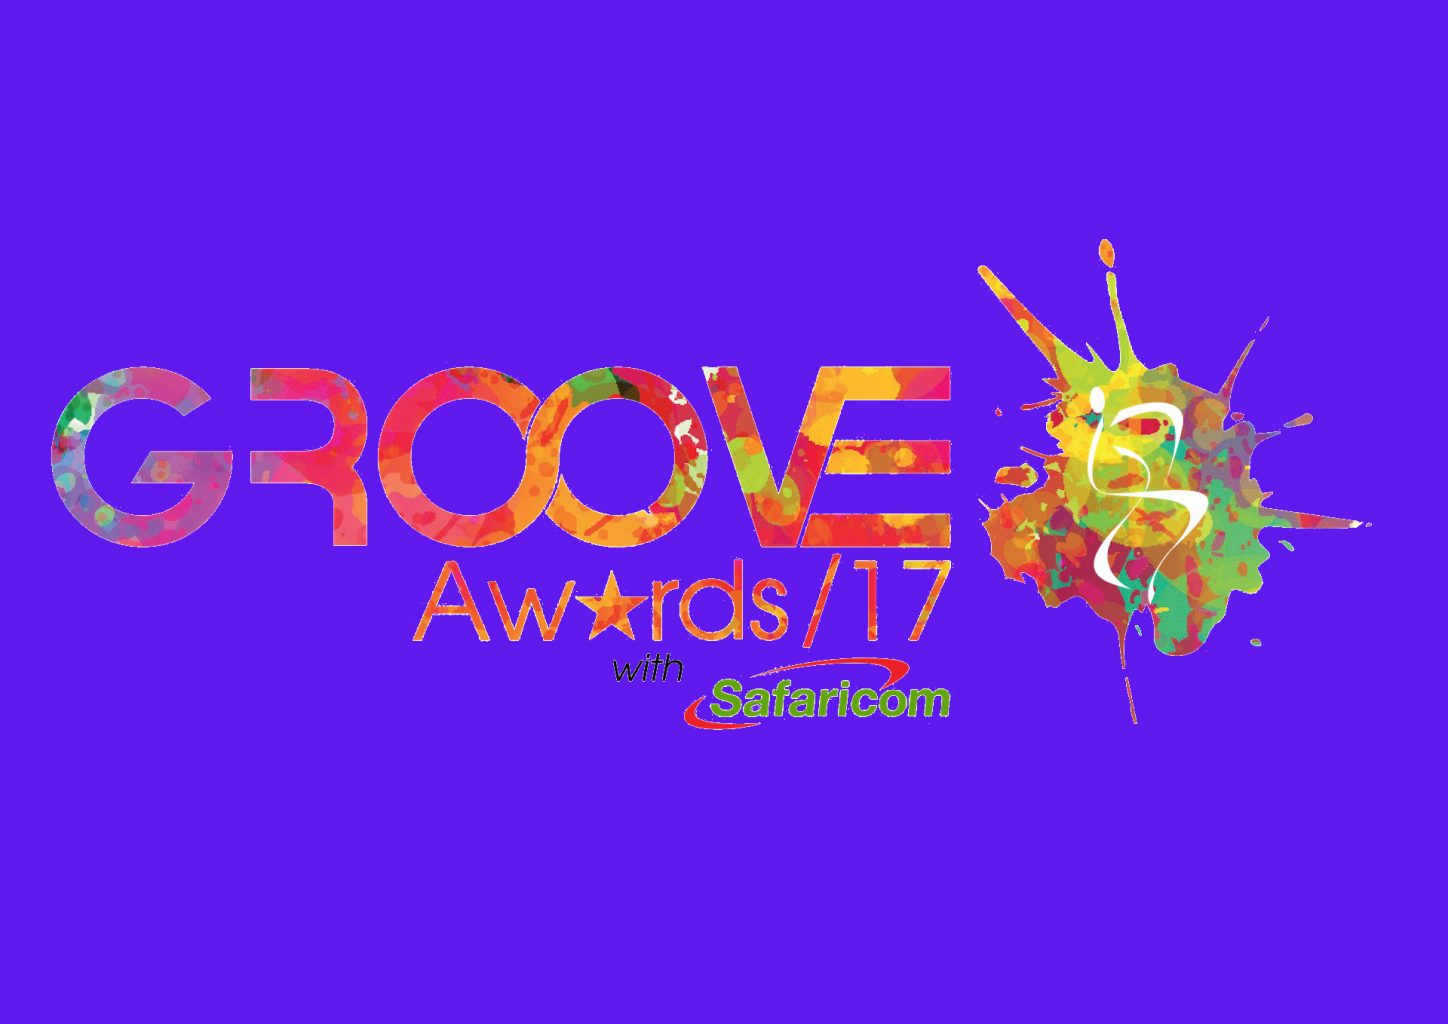 Groove Awards Winners